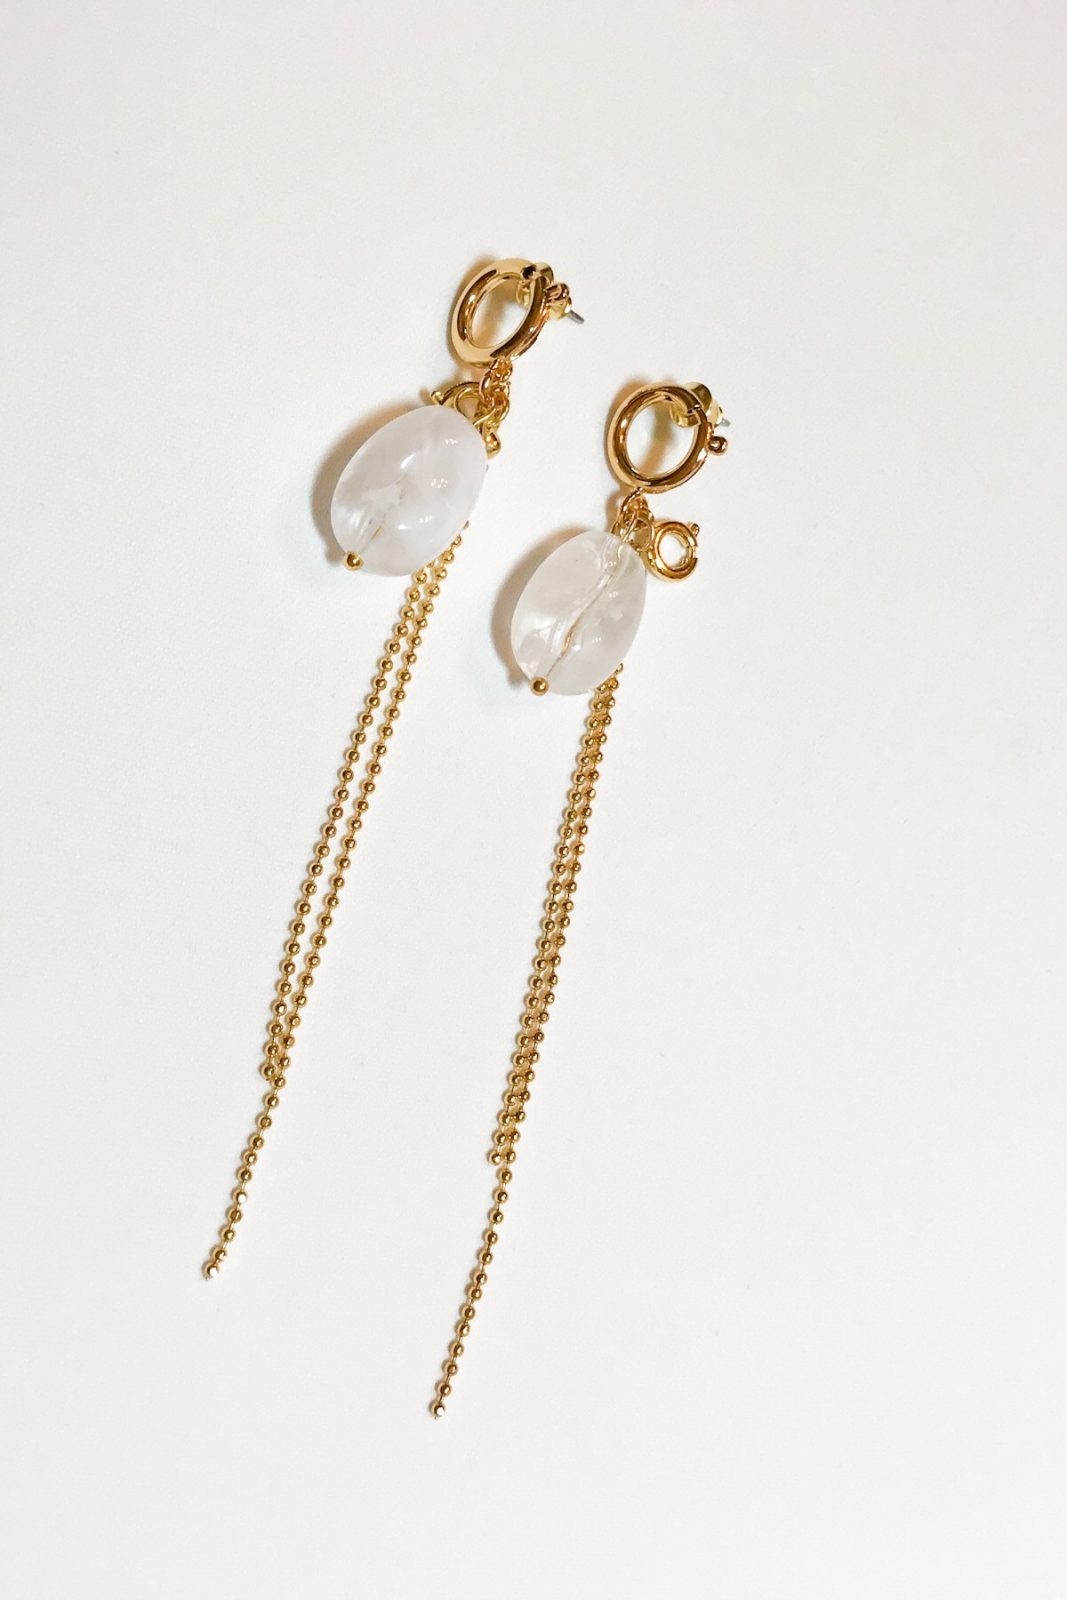 SKYE modern minimalist women fashion accessories Nuage resin bead Earrings